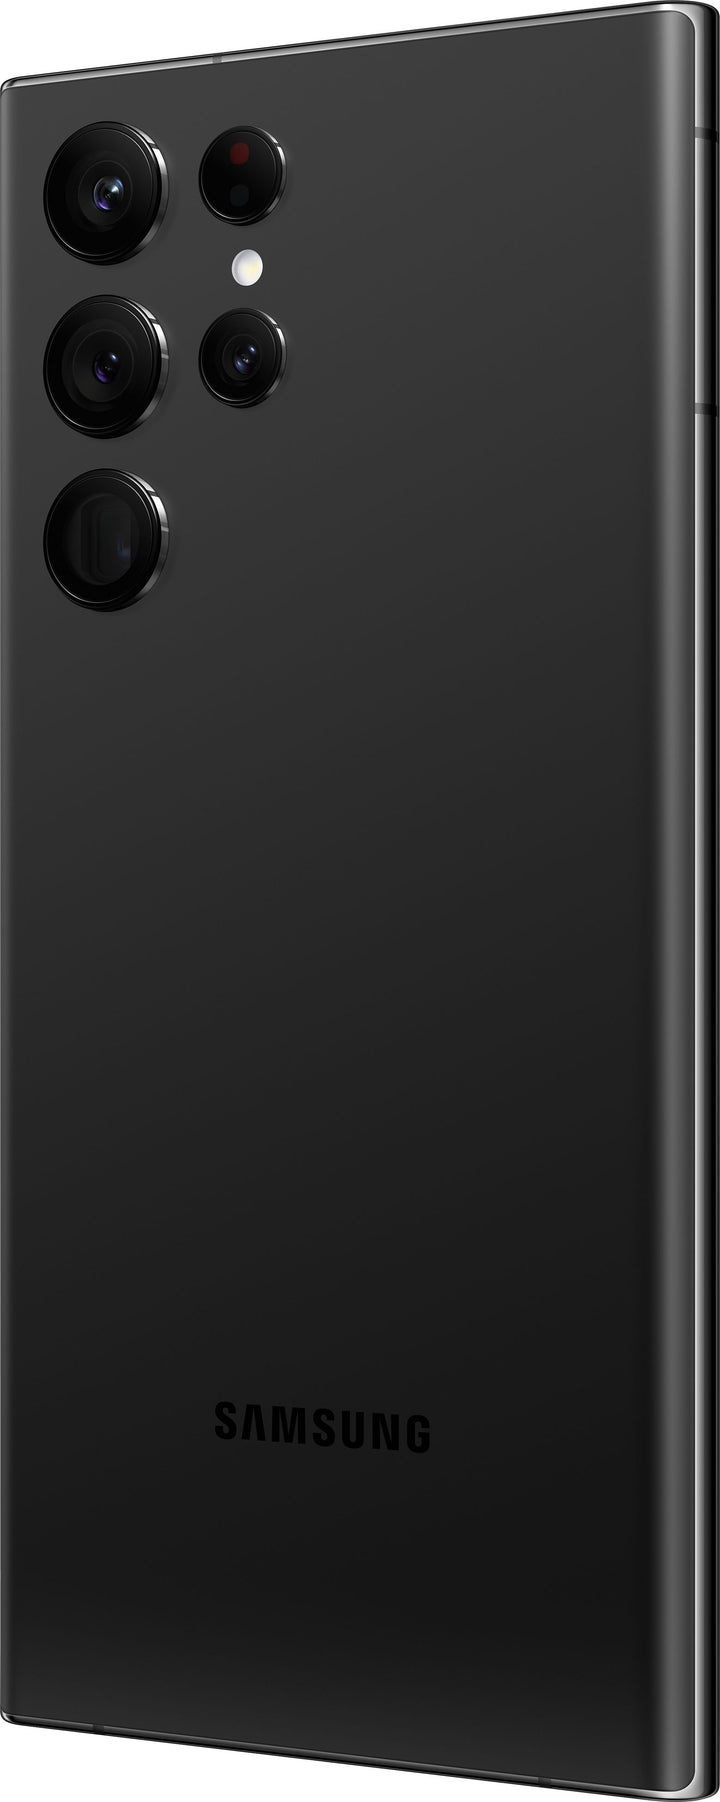 Samsung - Galaxy S22 Ultra 128GB - Phantom Black (Verizon)_12